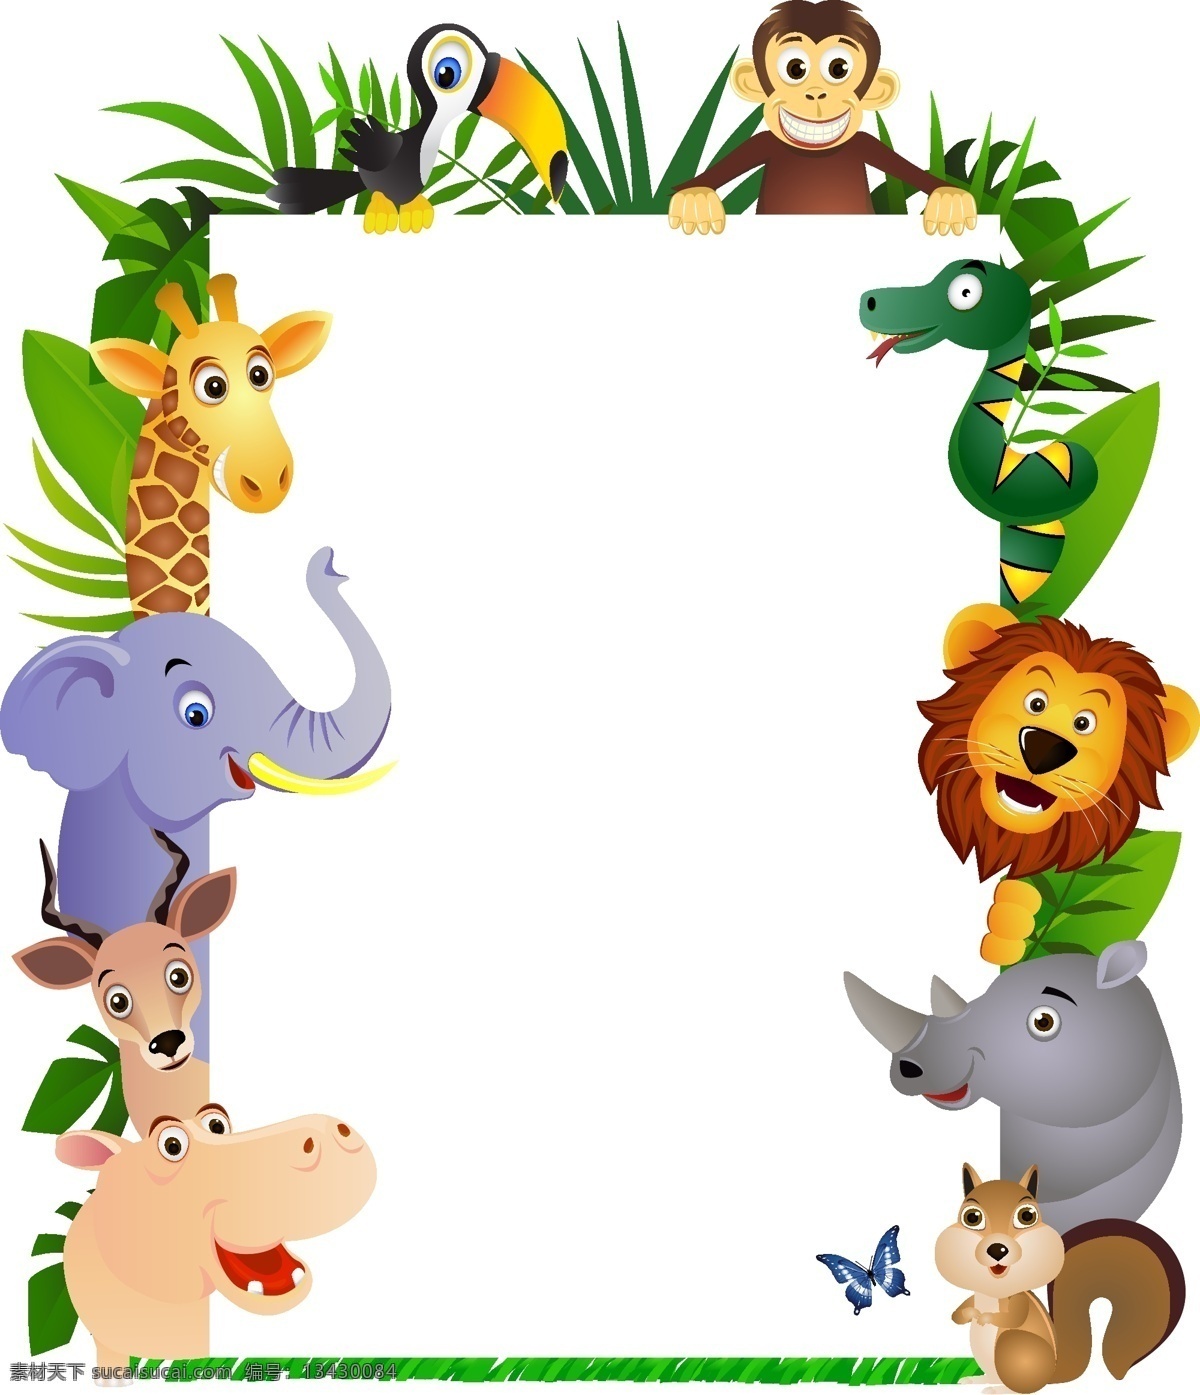 卡通相框 卡通 卡通动物 猴子 鹦鹉 鹿 大象 河马 松树 狮子 相框 边框 儿童相框 矢量素材 边框相框 底纹边框 矢量